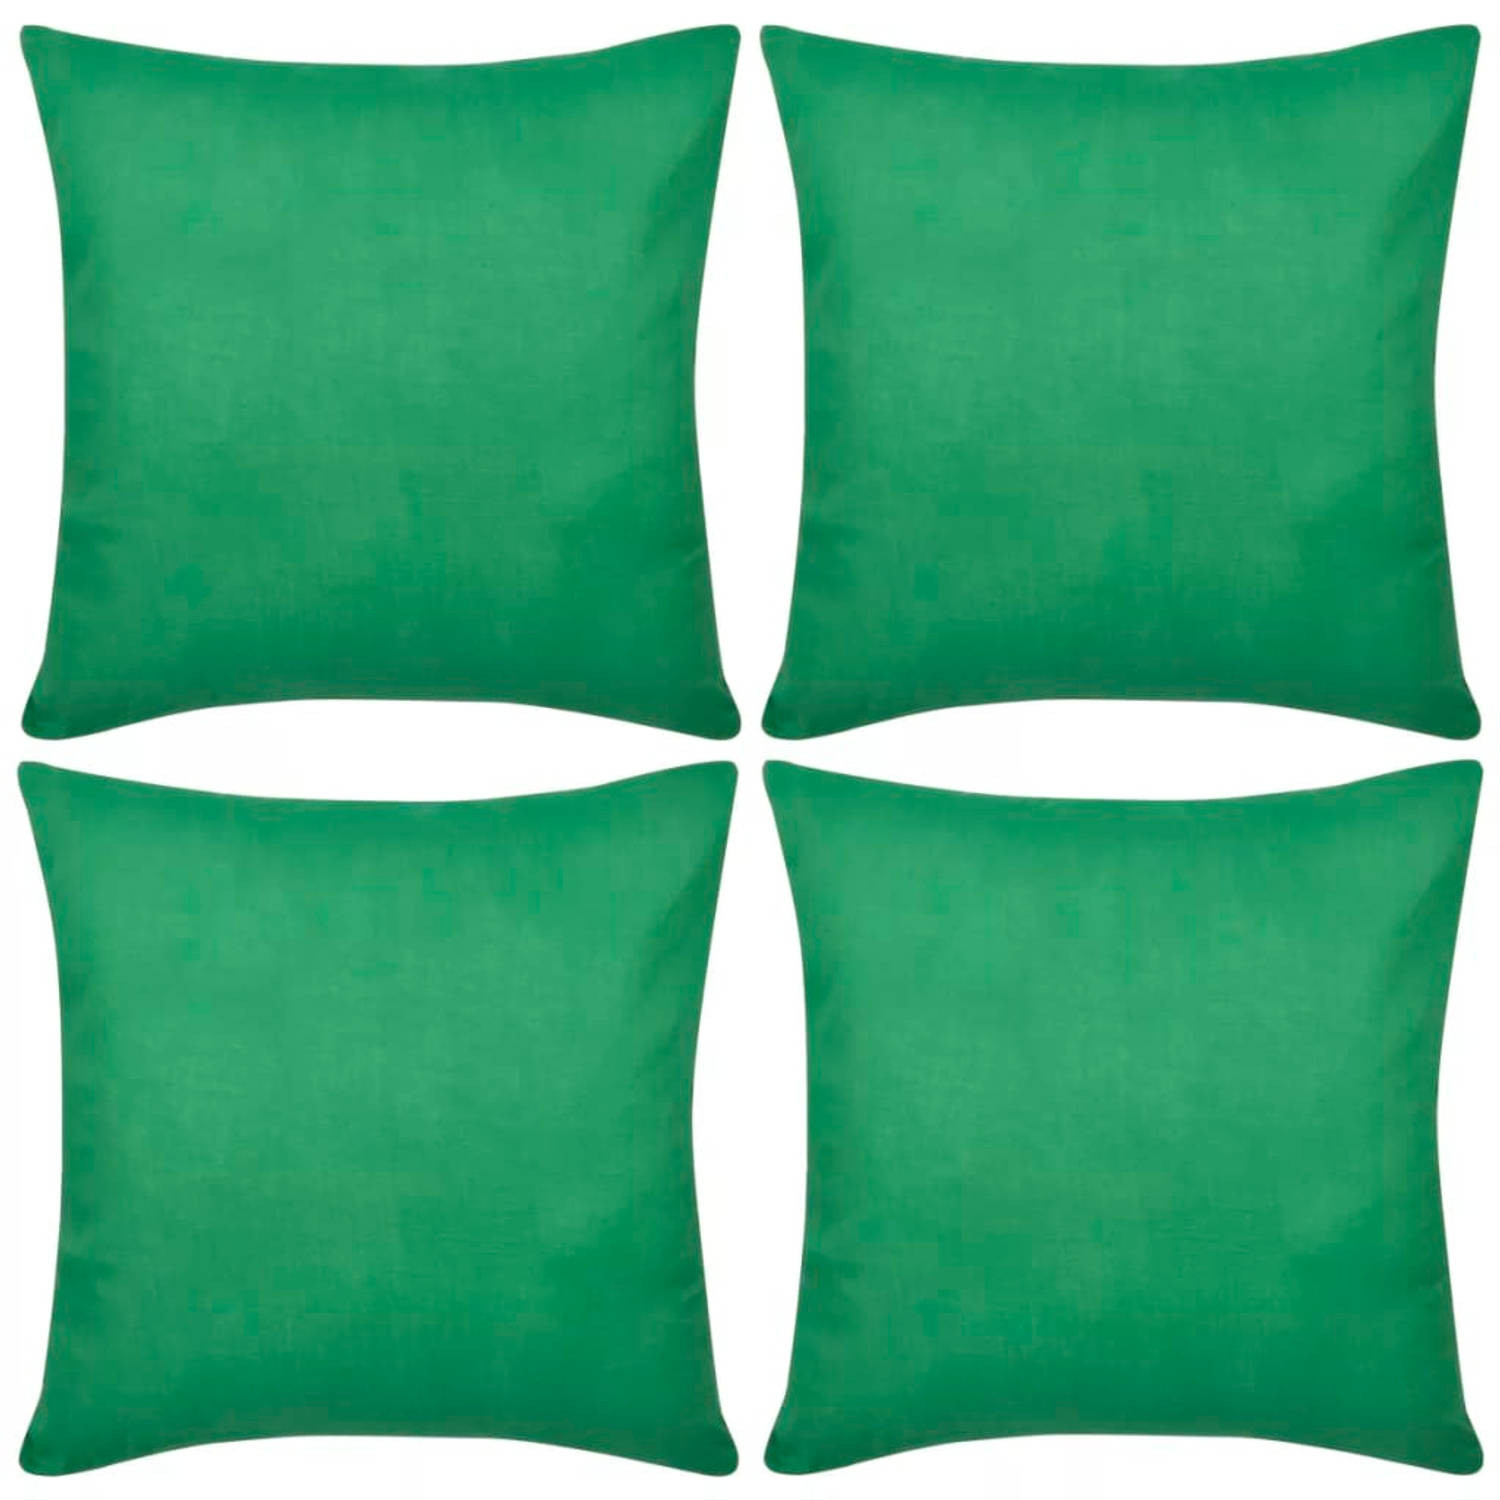 Kussenhoezen katoen 50 x 50 cm groen 4 stuks